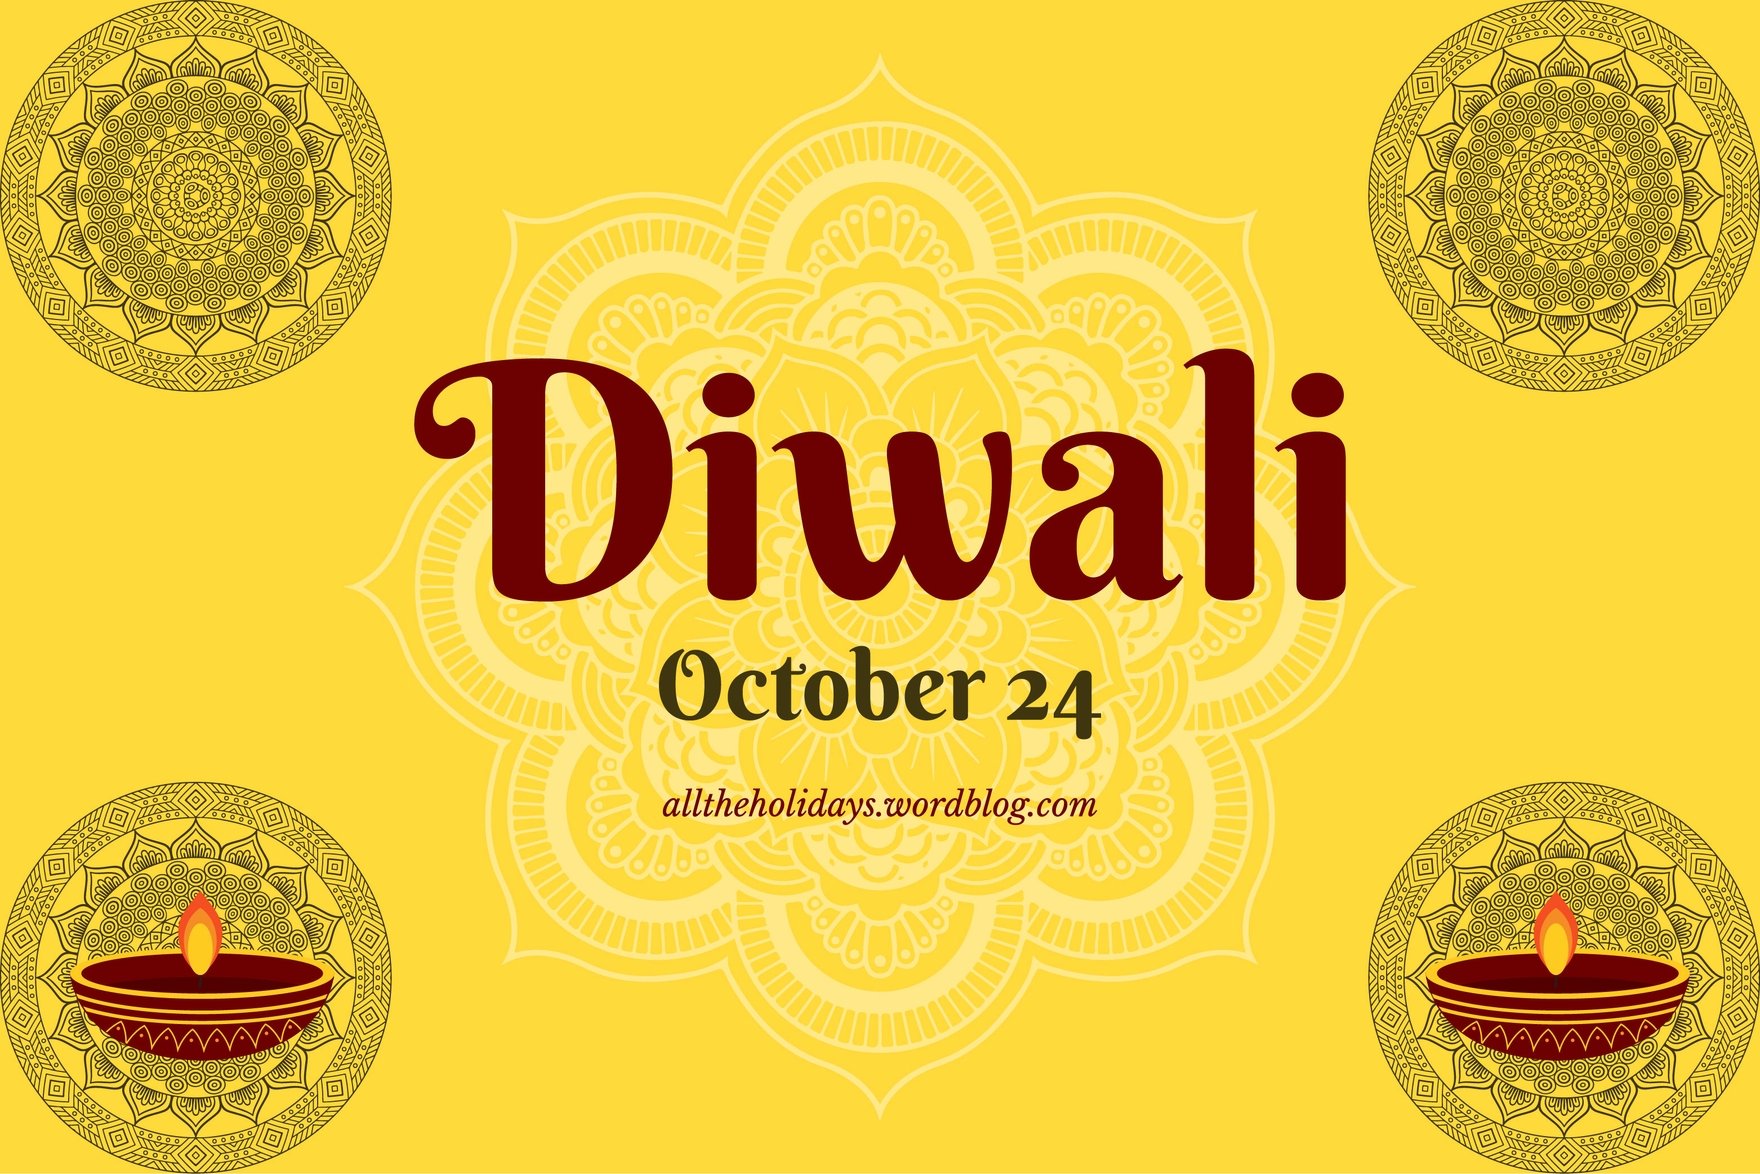 Free Diwali Blog Banner in Illustrator, PSD, EPS, SVG, JPG, PNG